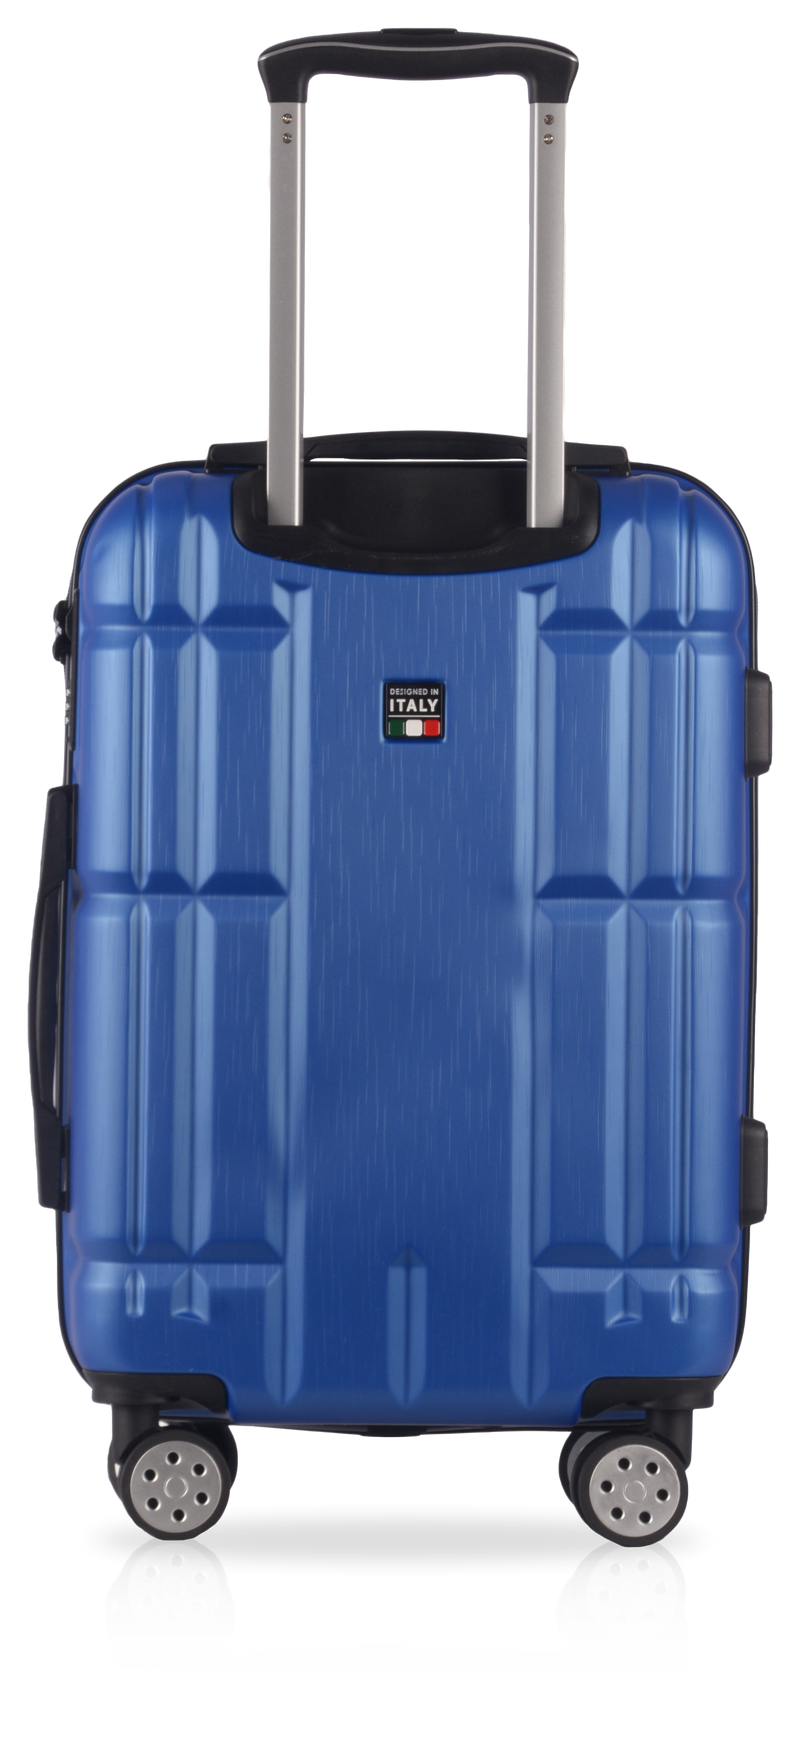 TUCCI Italy MASSA 26" Hardcase Durable Luggage Suitcase